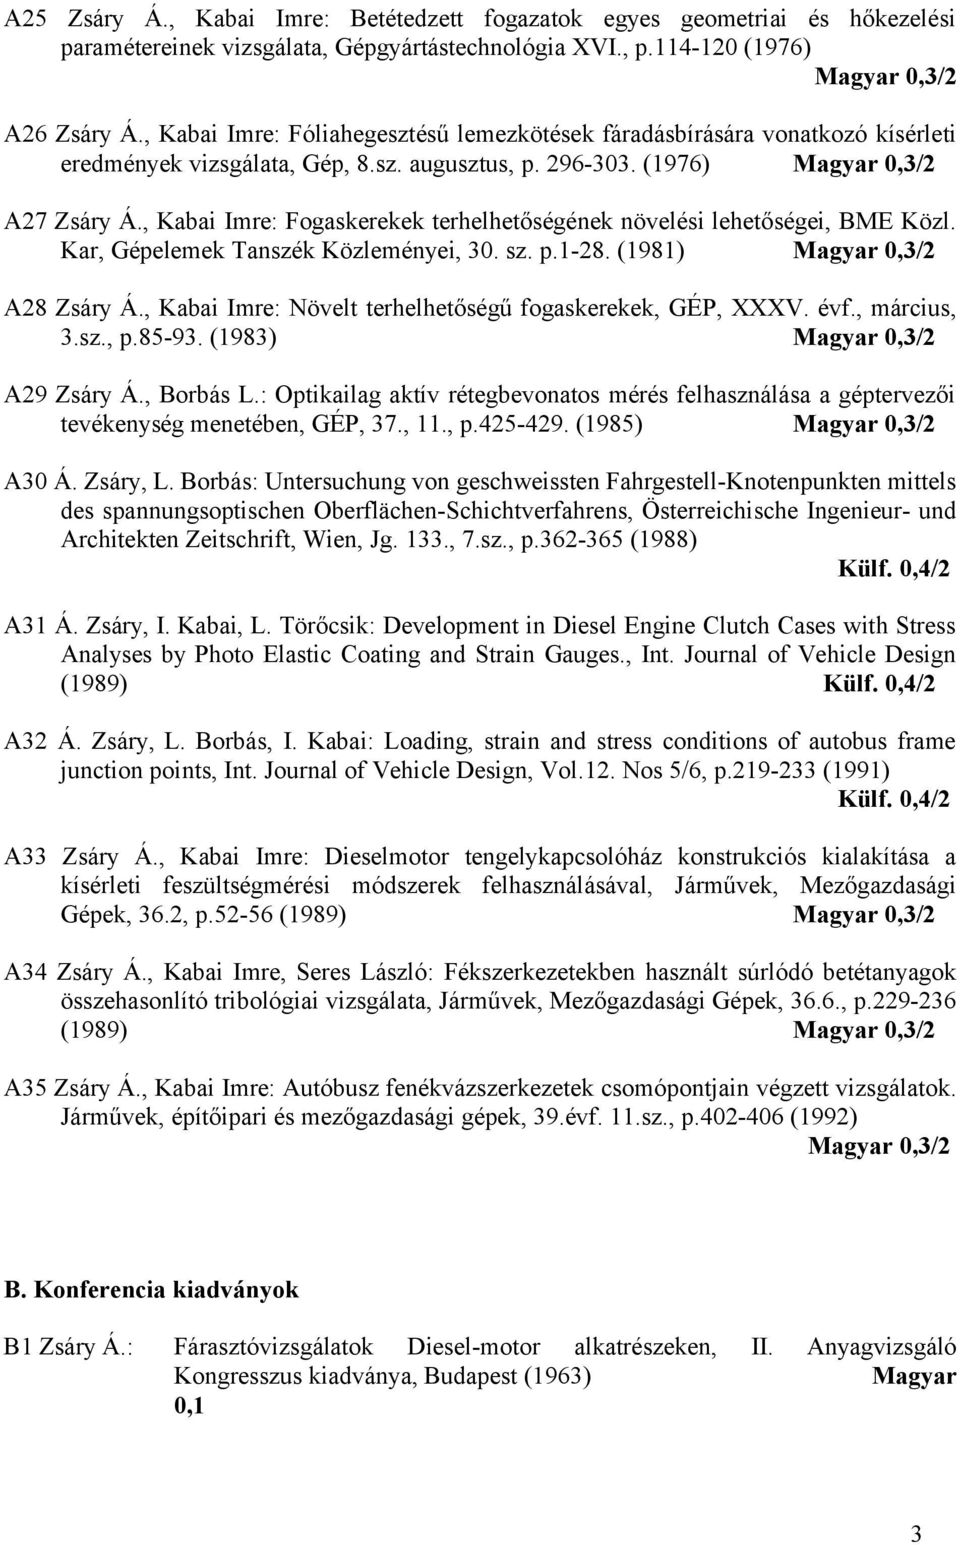 Zsáry Árpád publikációs jegyzéke - PDF Free Download